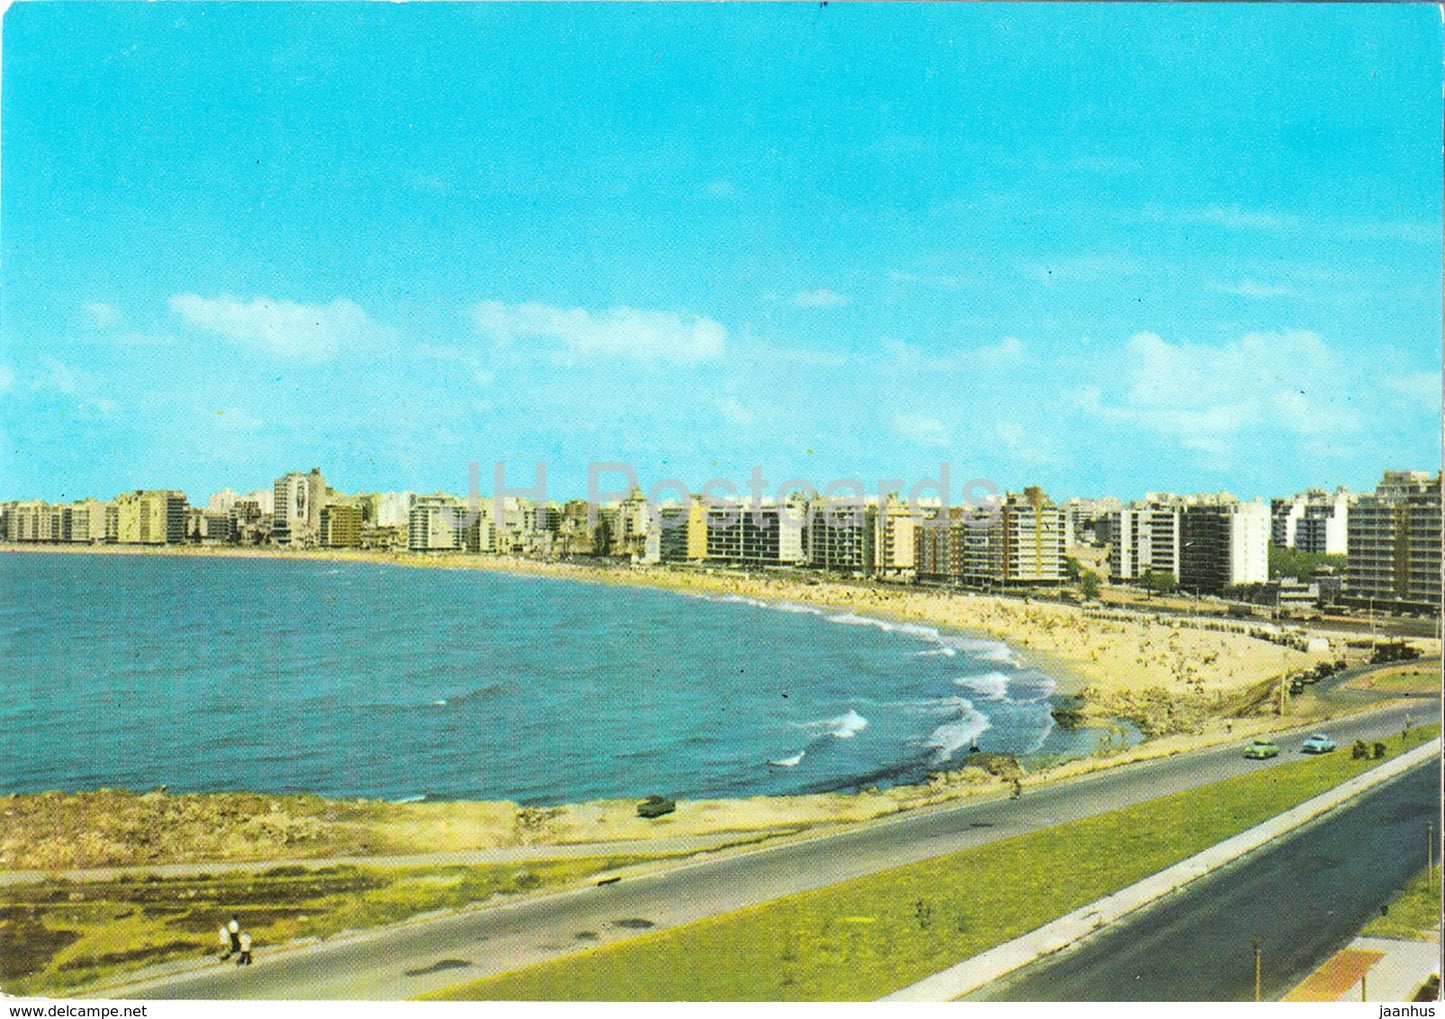 Montevideo - Vista Parcial de Playa Pocitos - Partial View of Pocitos Beach - 607 - 1969 - Urugay - used - JH Postcards